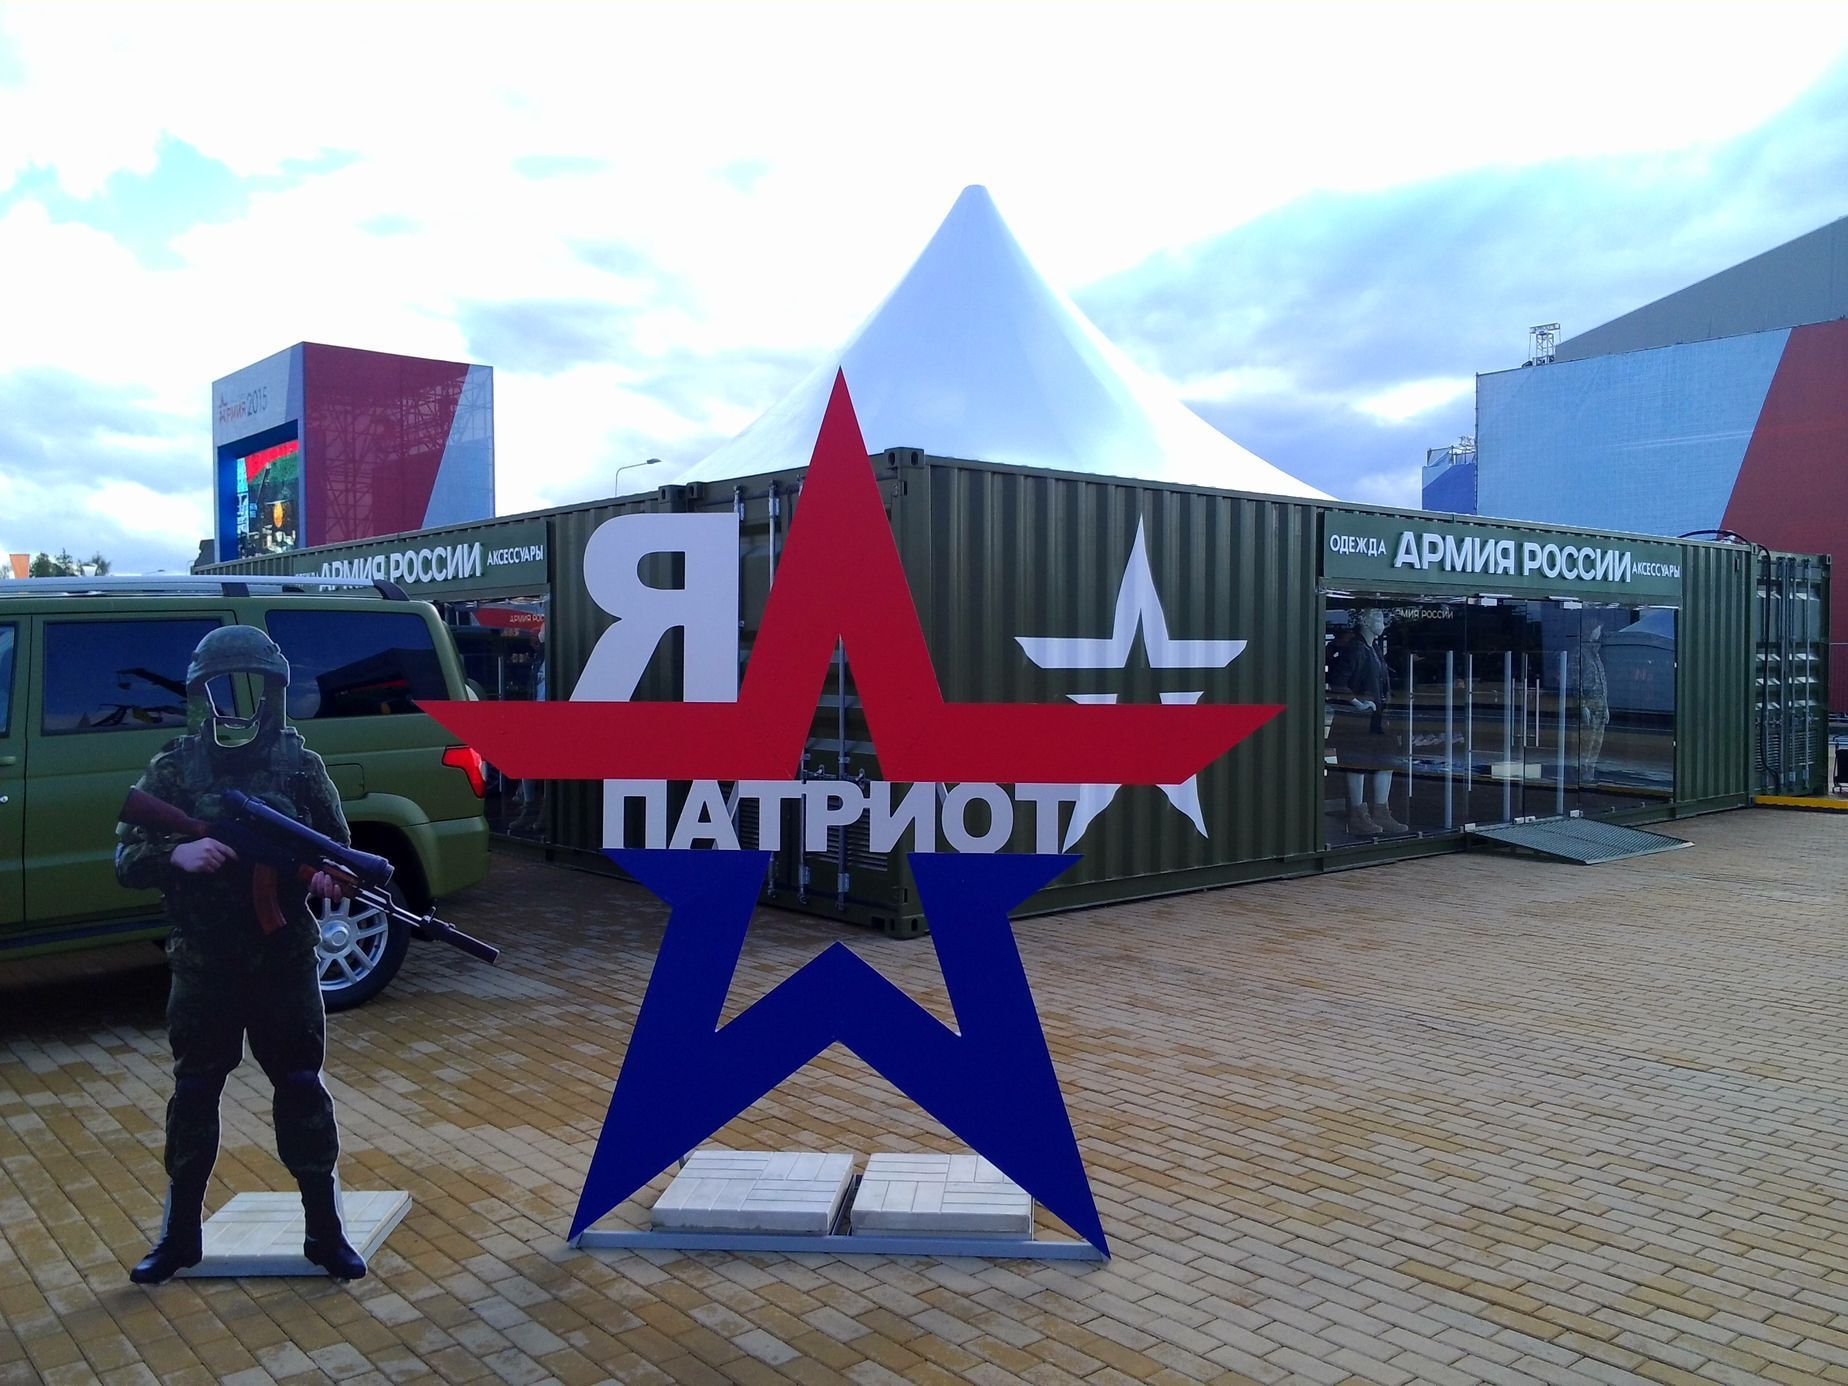 Mezinárodní fórum Armija 2015 v Rusku